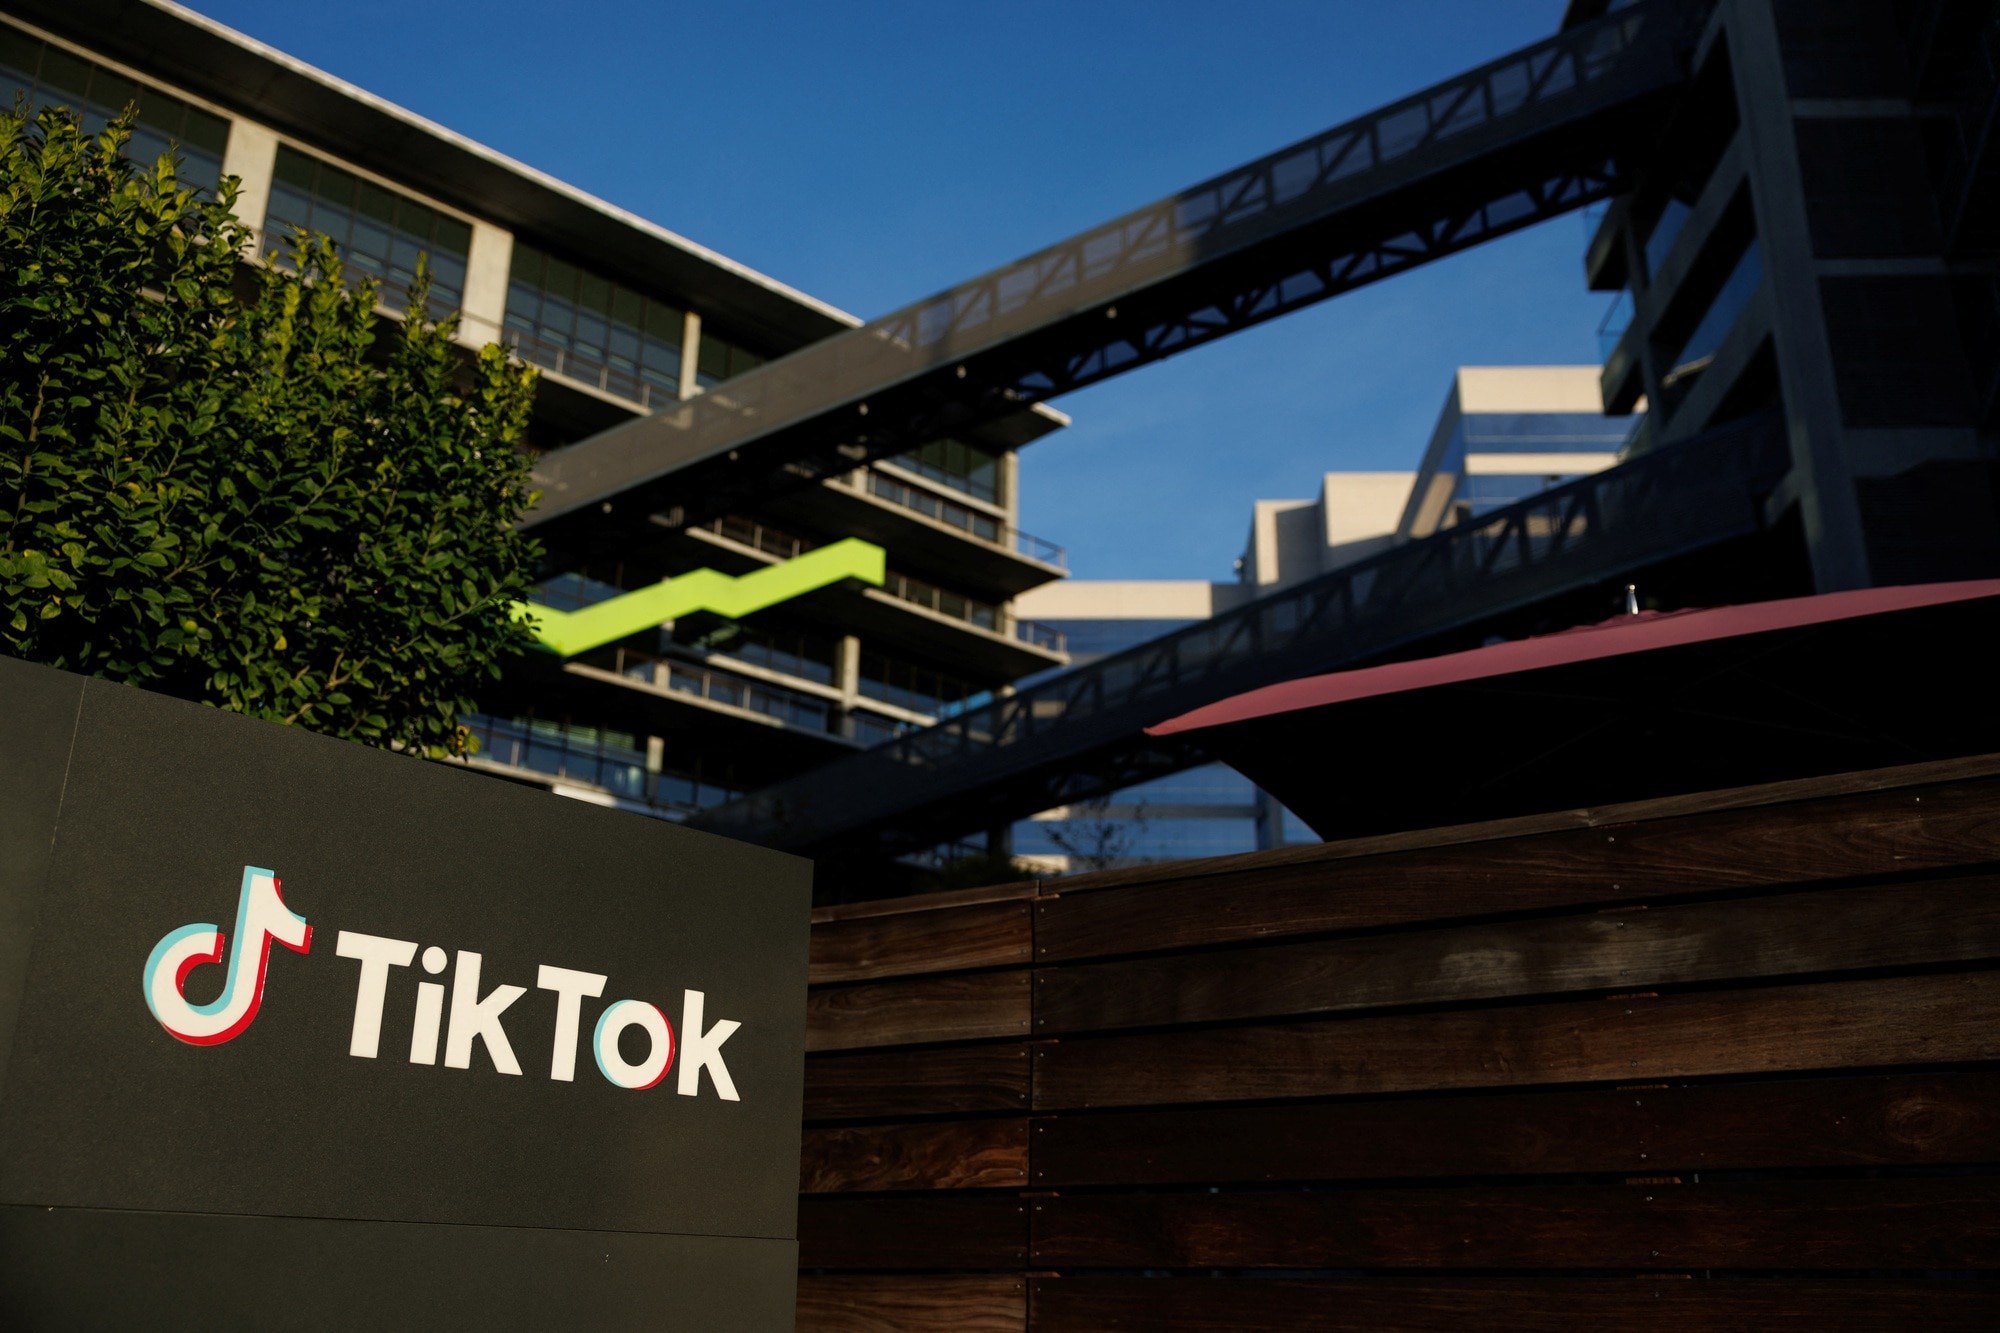 Canada cảnh báo nguy cơ gián điệp từ TikTok